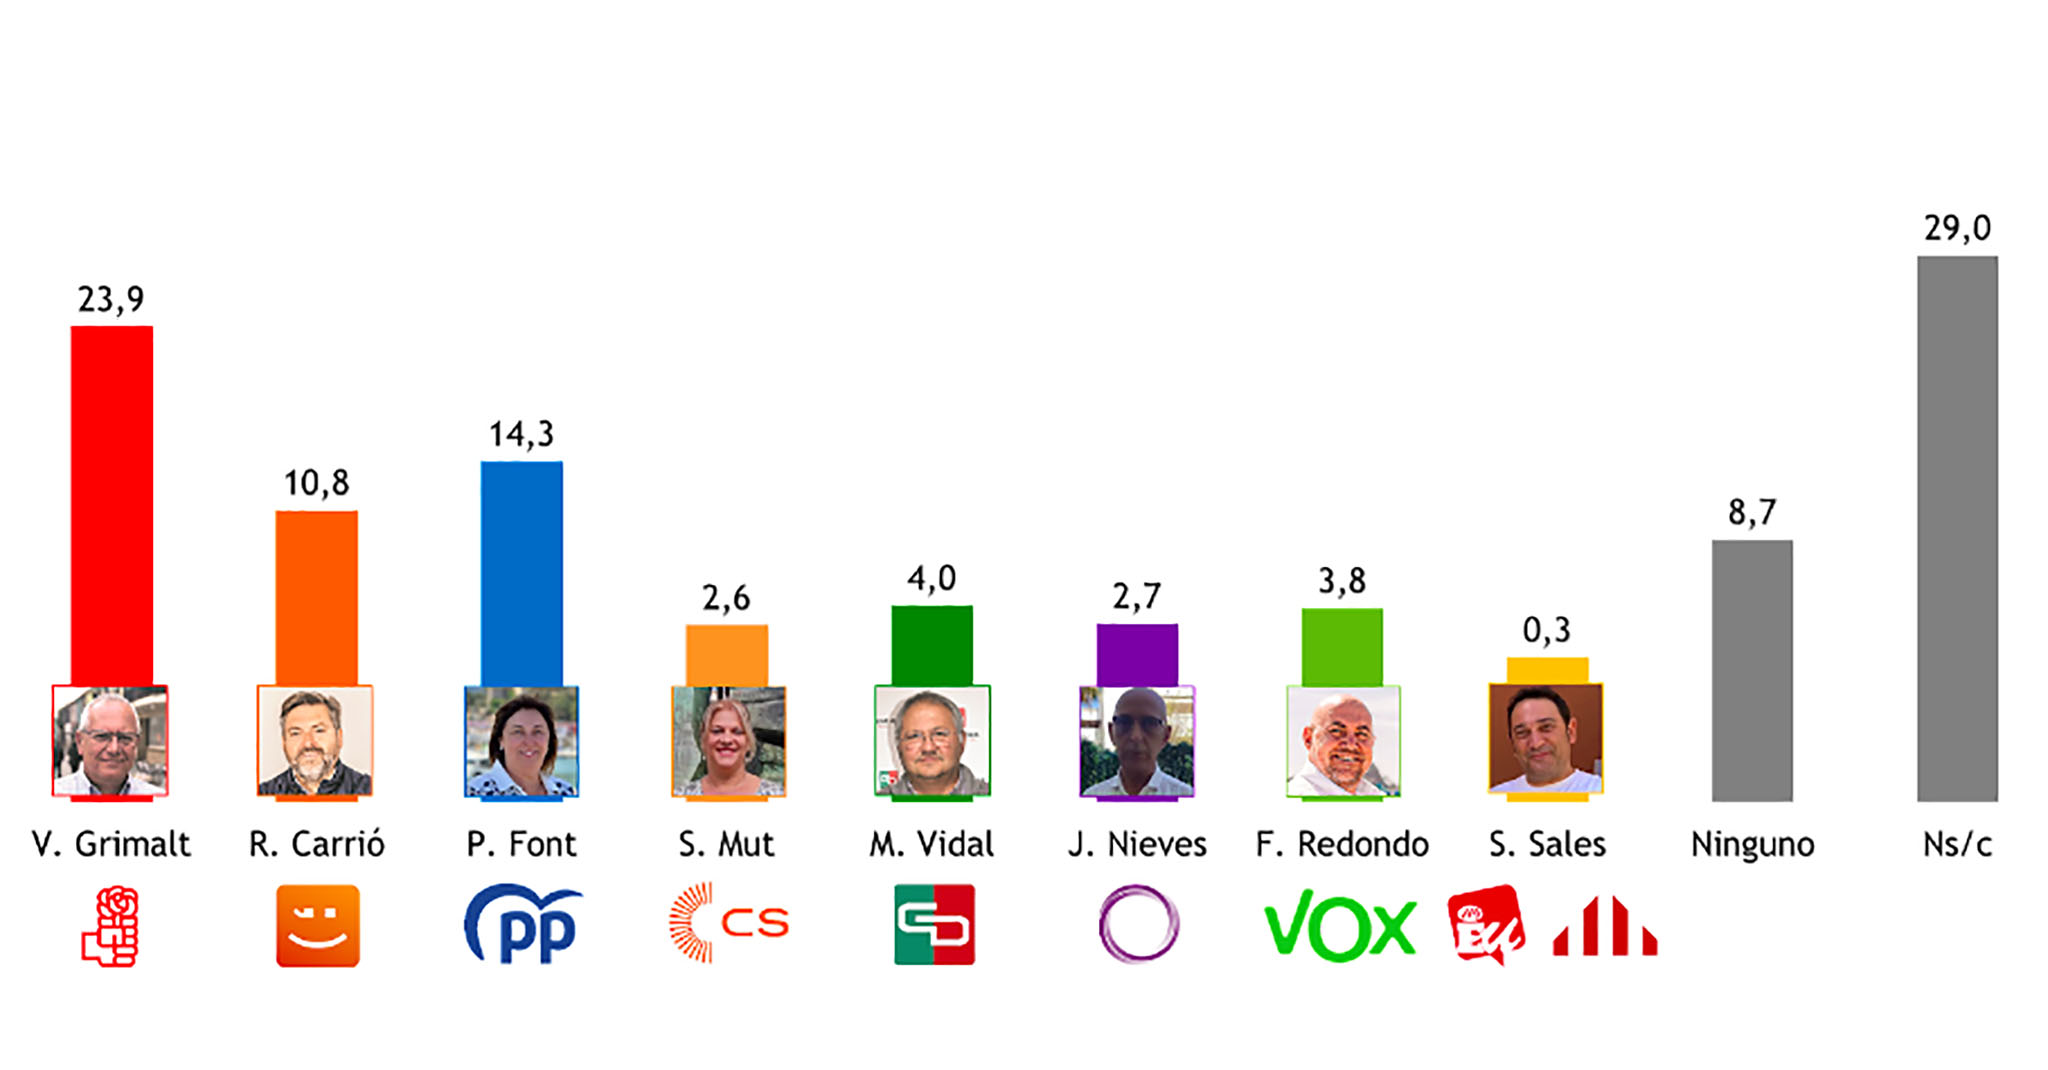 Alcalde que preferiría el elector para Dénia (%)